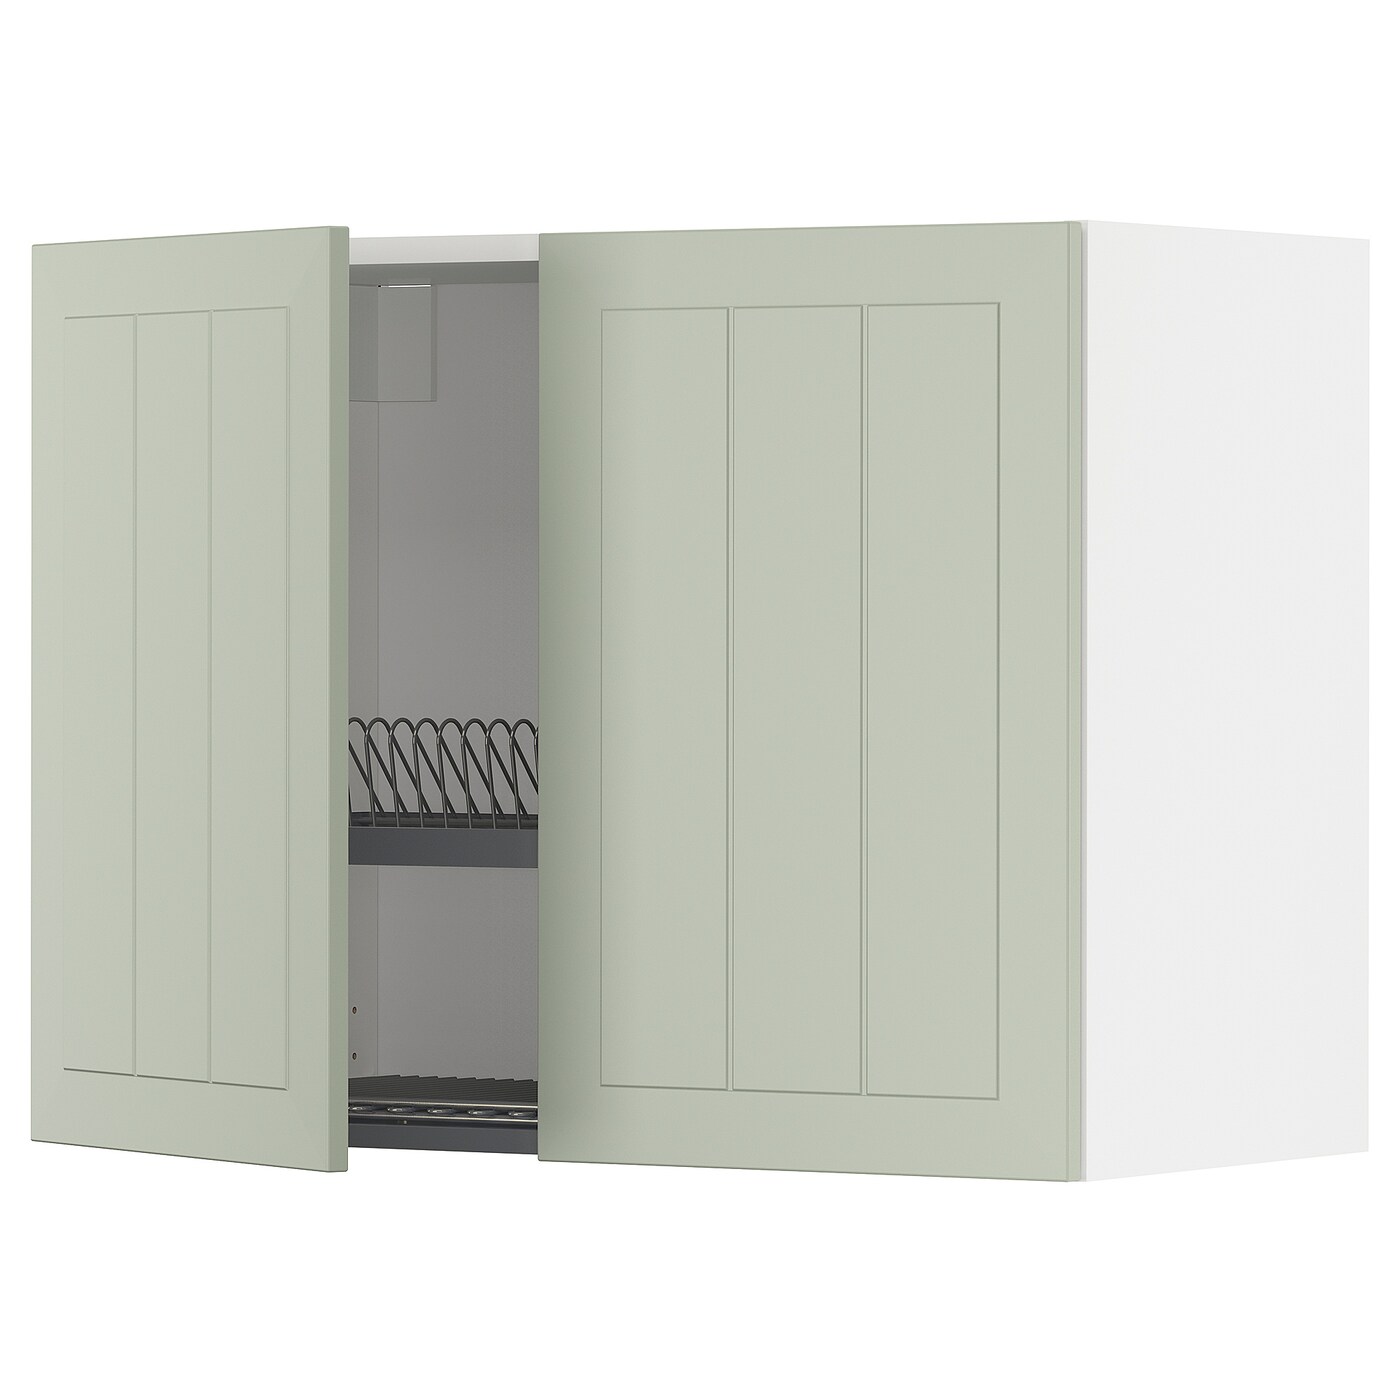 Навесной шкаф с сушилкой - METOD IKEA/ МЕТОД ИКЕА, 60х80 см, белый/зеленый